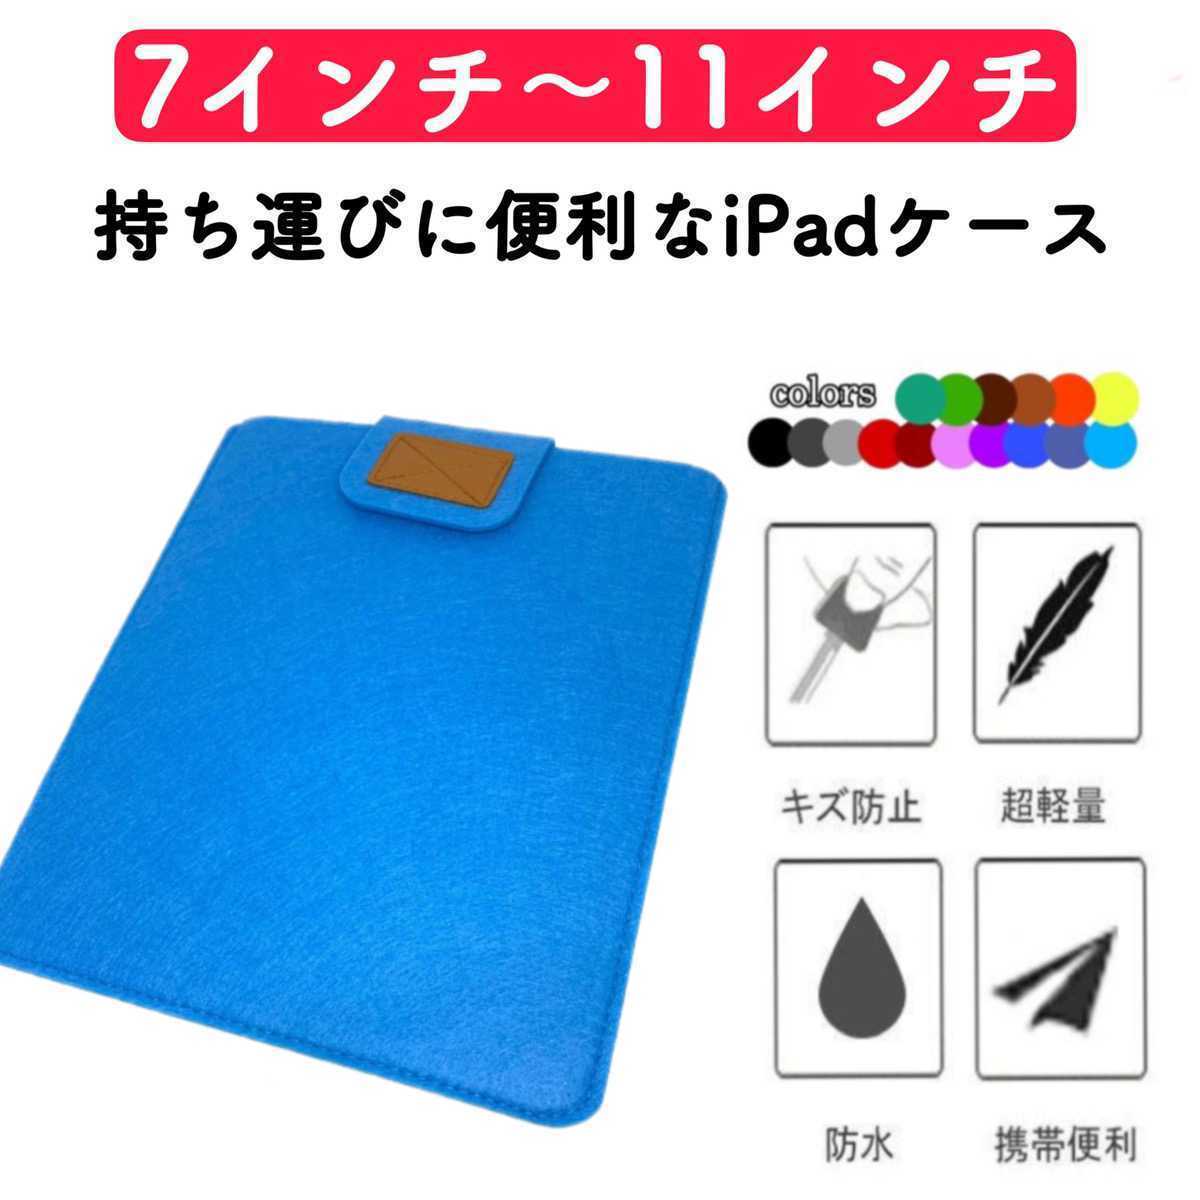 タブレットケース iPadケース カバー コンパクト 薄型 フェルト 水色 激安 7インチ 8インチ 9インチ 10インチ 11インチ 保護ケース 第9世代_画像1